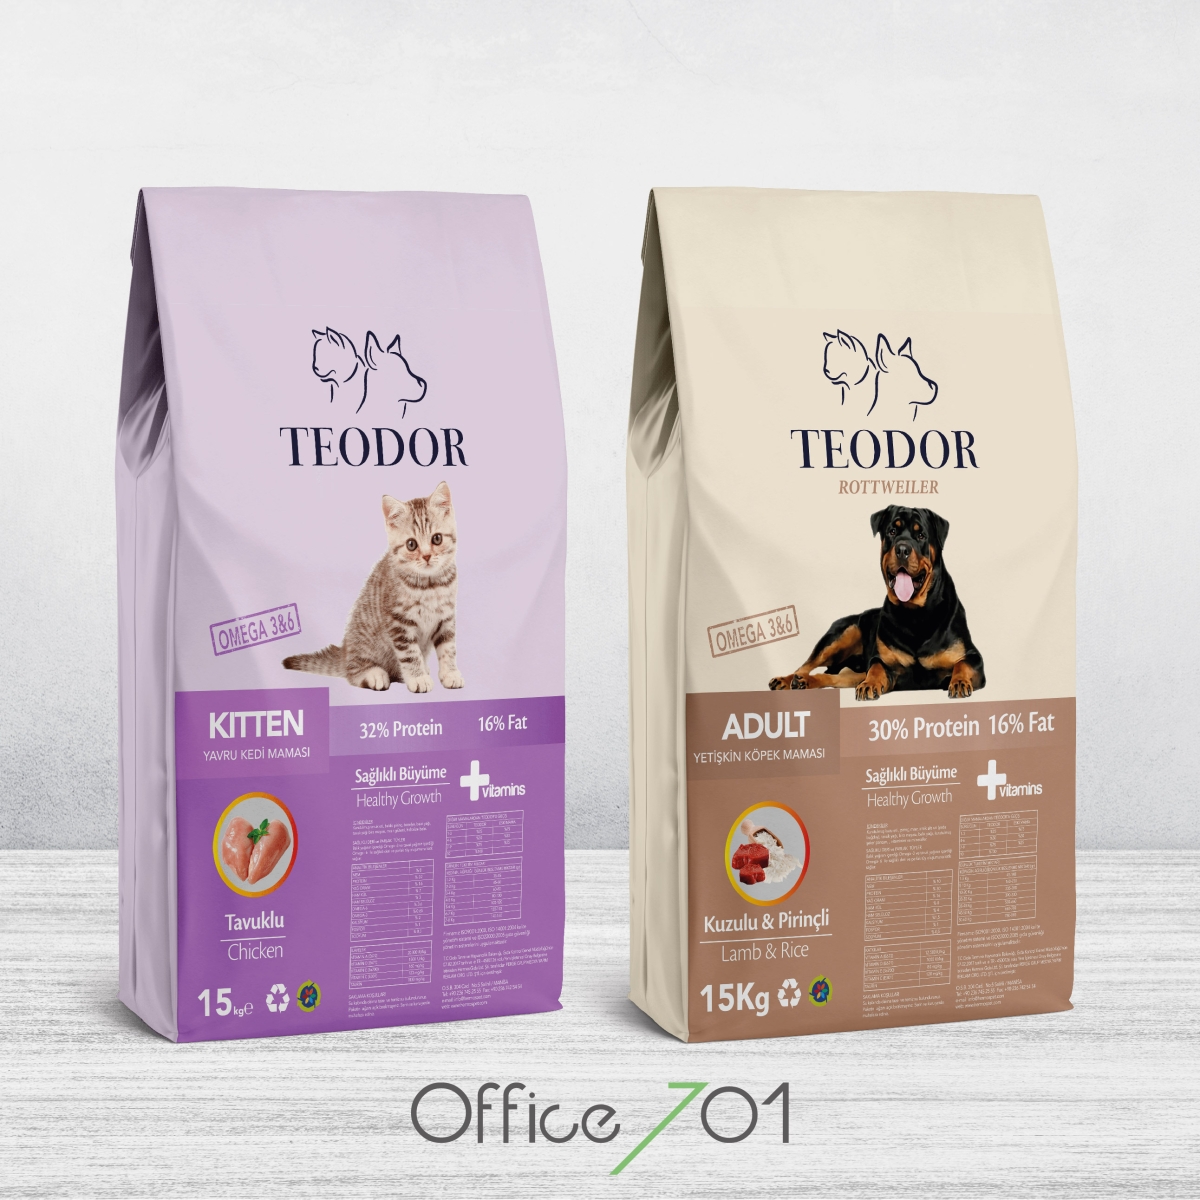 Office701 | Teodor | Pet Food Package Design